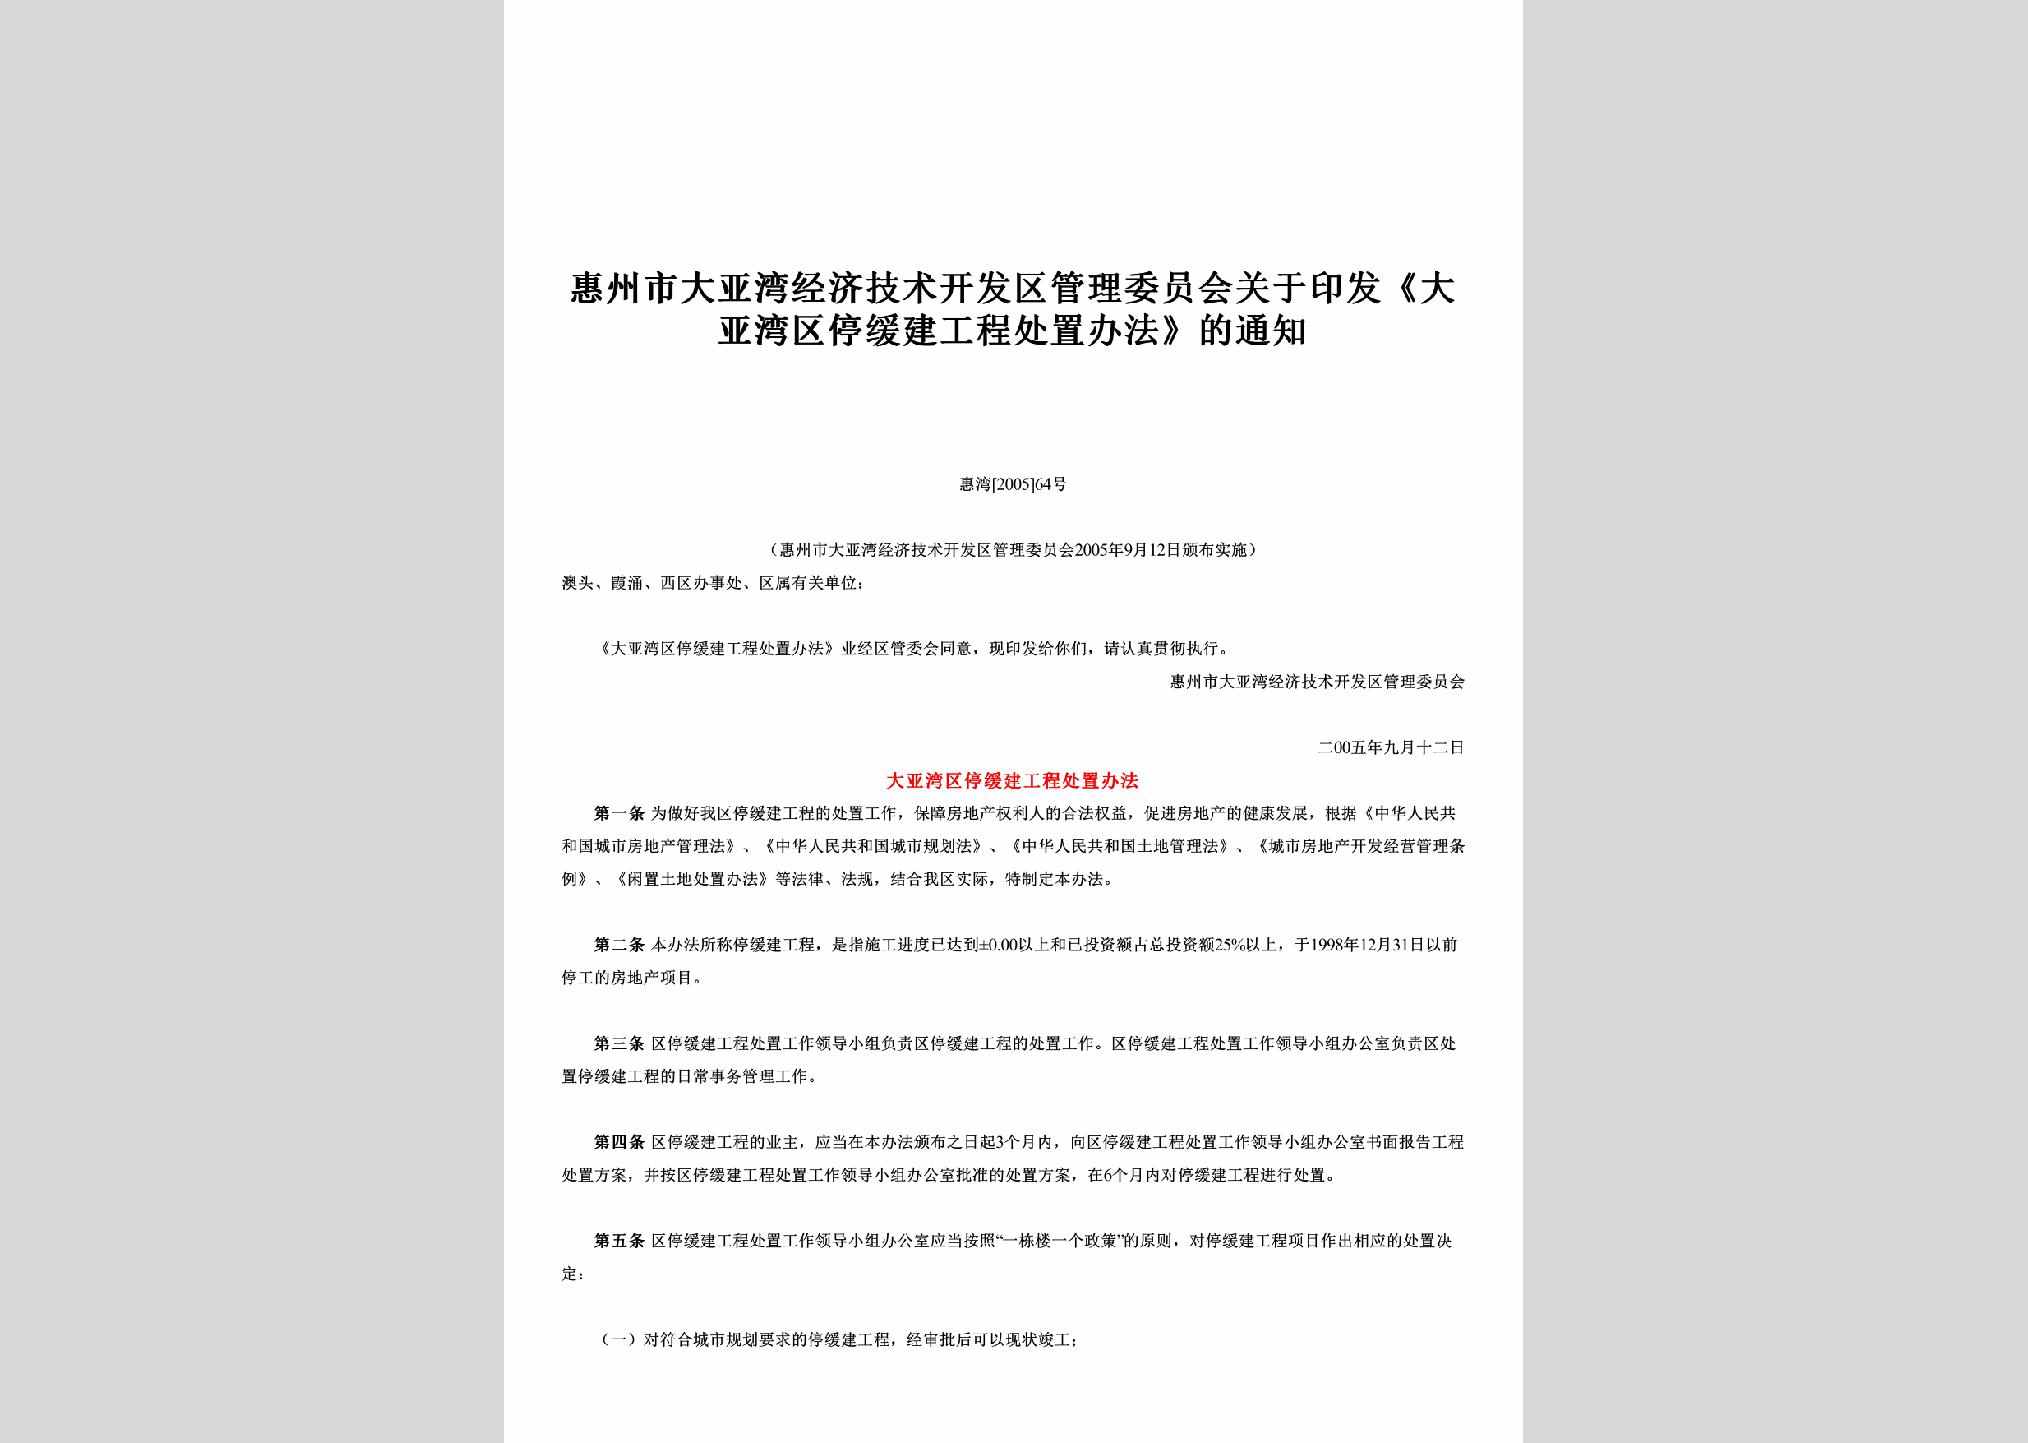 惠湾[2005]64号：关于印发《大亚湾区停缓建工程处置办法》的通知